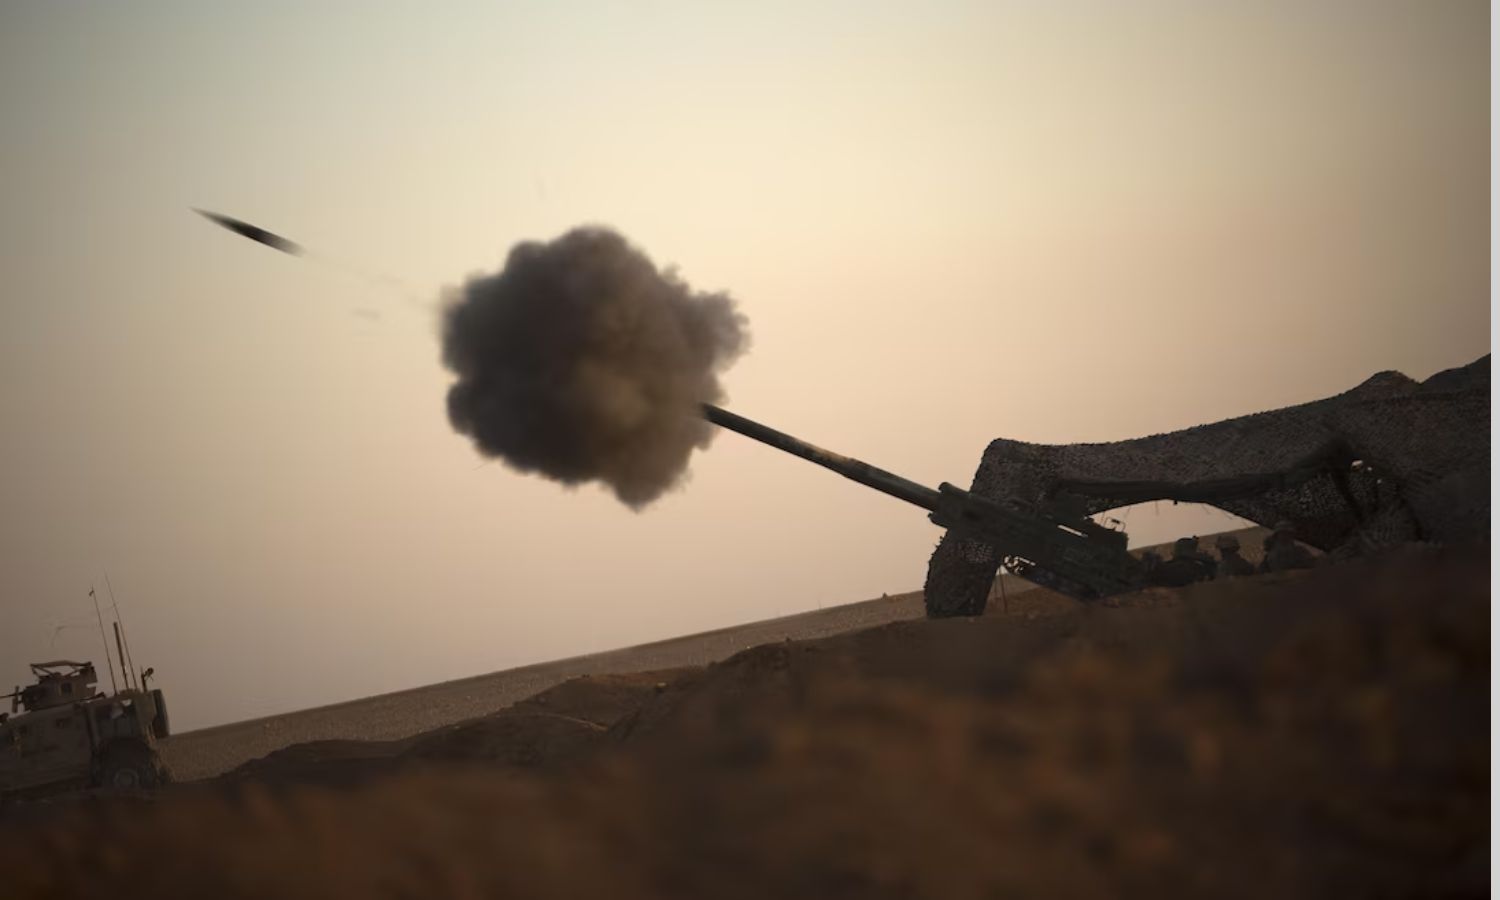 وحدات من مشاة البحرية الأمريكية تنفذ عملية استهداف مدفعي لمواقع تنظيم "الدولة الإسلامية" شمال شرقي سوريا- 15 من أيار 2017 (سينتكوم)